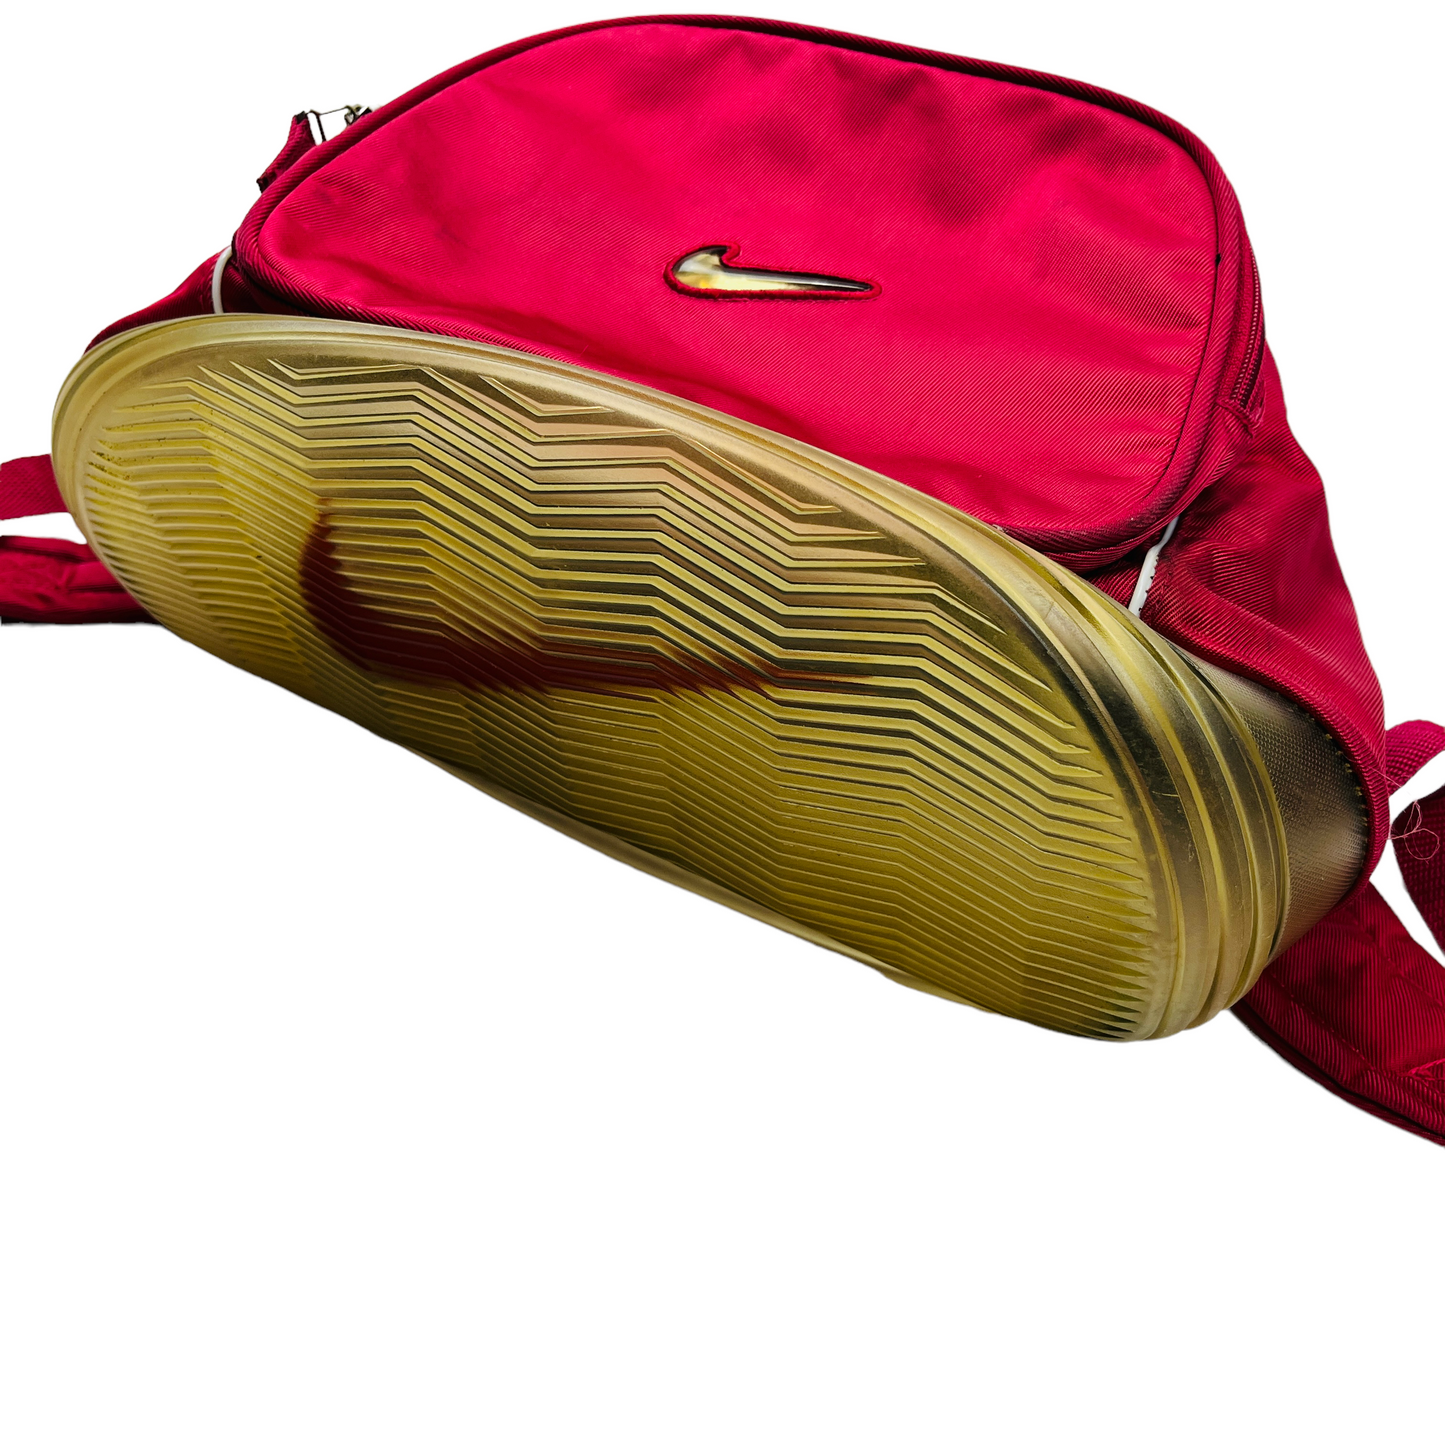 01305 Nike 90s Bagpack